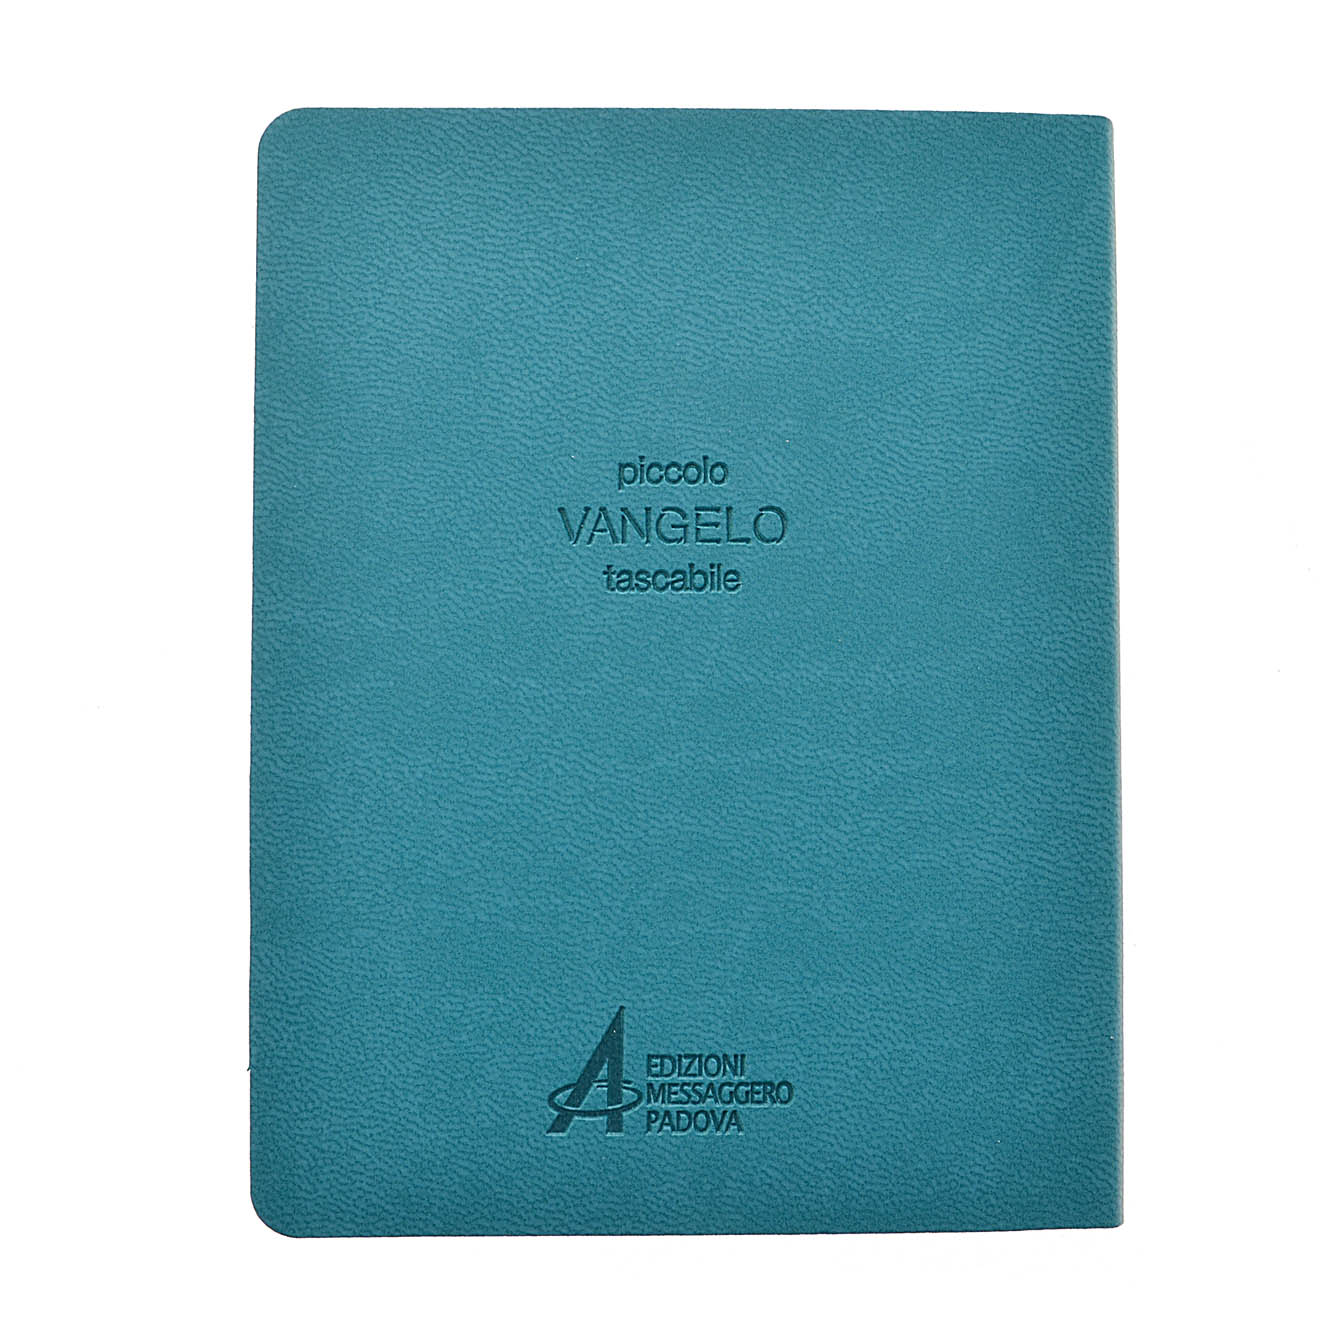 Vangelo (ediz. tascabile - Azzurro) libro, Redazione Emp, Edizioni  Messaggero, maggio 2014, Vangeli 